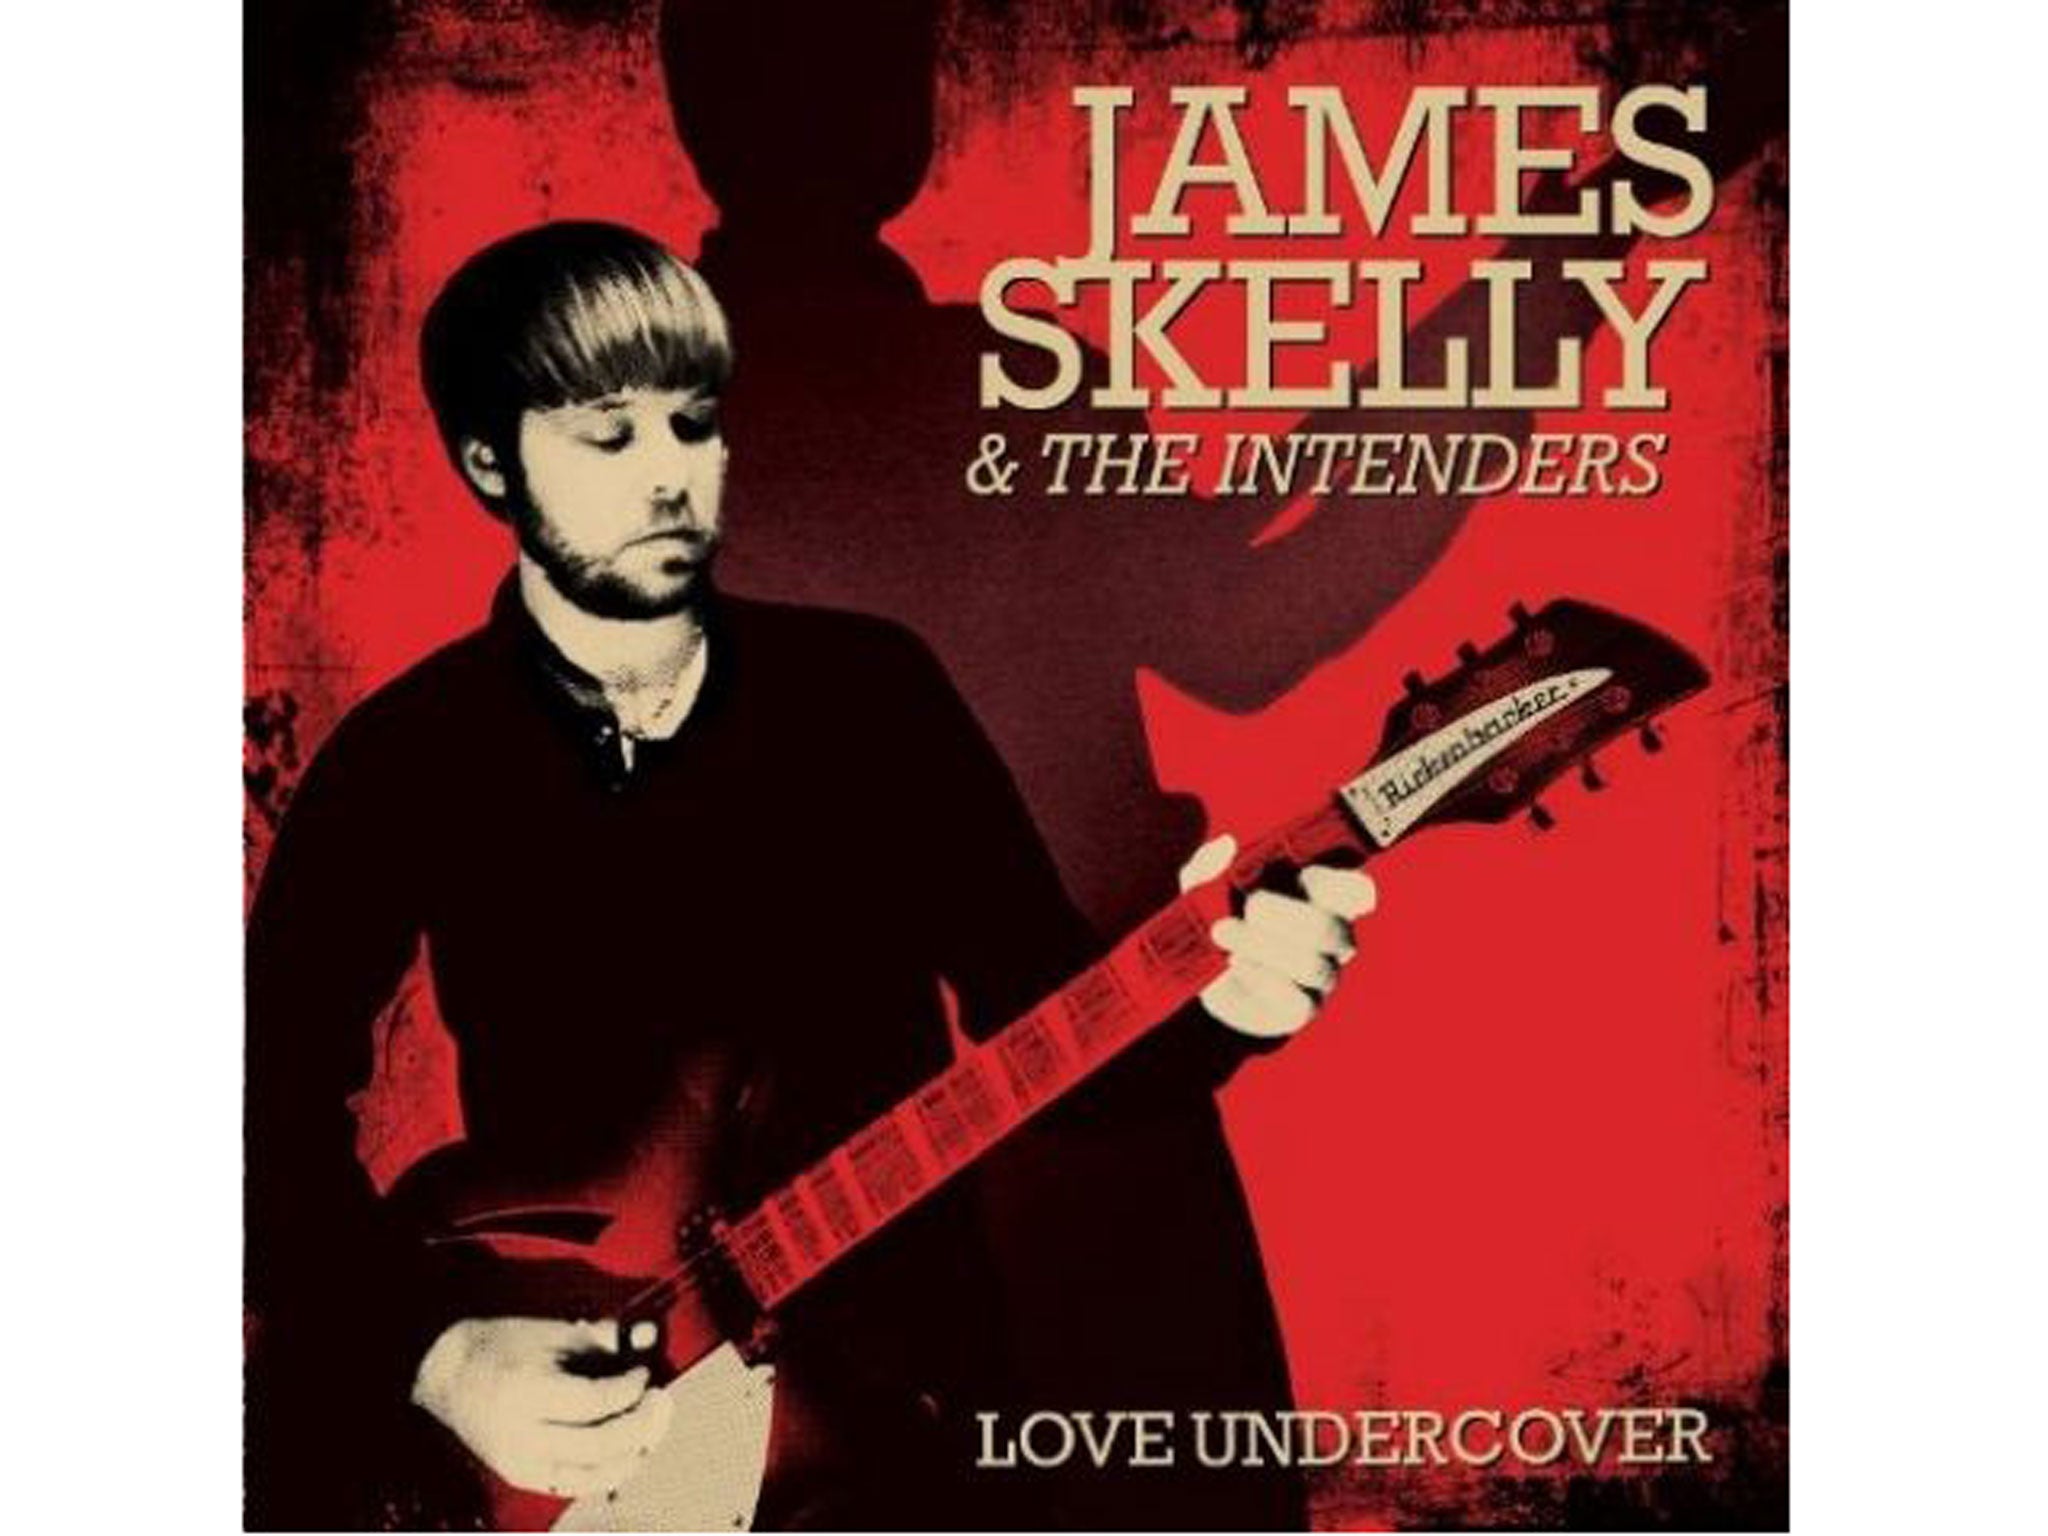 James Skelly & The Intenders, Love Undercover (Skeleton Key/Cooking Vinyl)